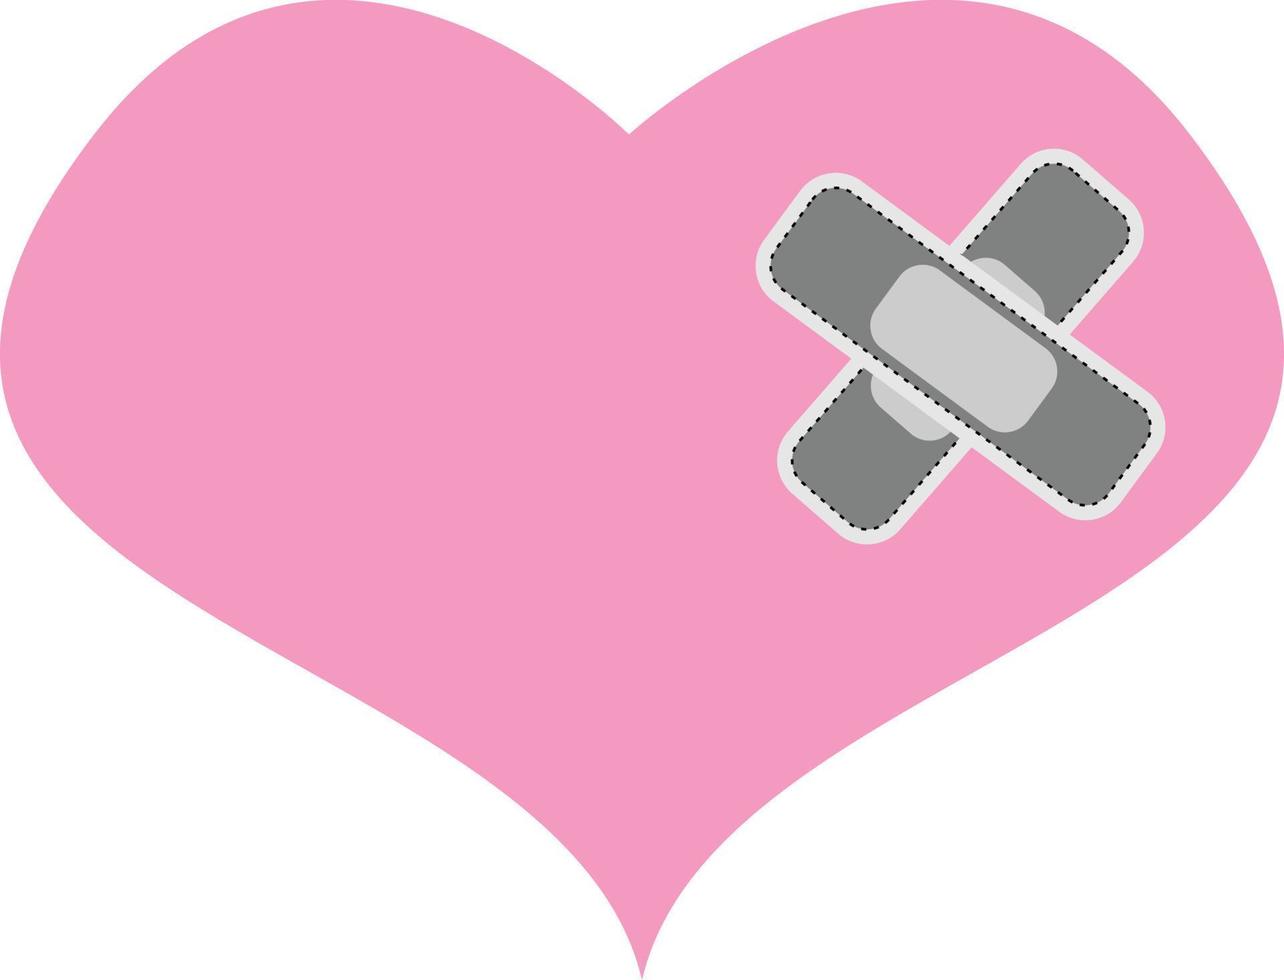 Aheartbreak broken heart or divorce flat vector icon for apps and websites